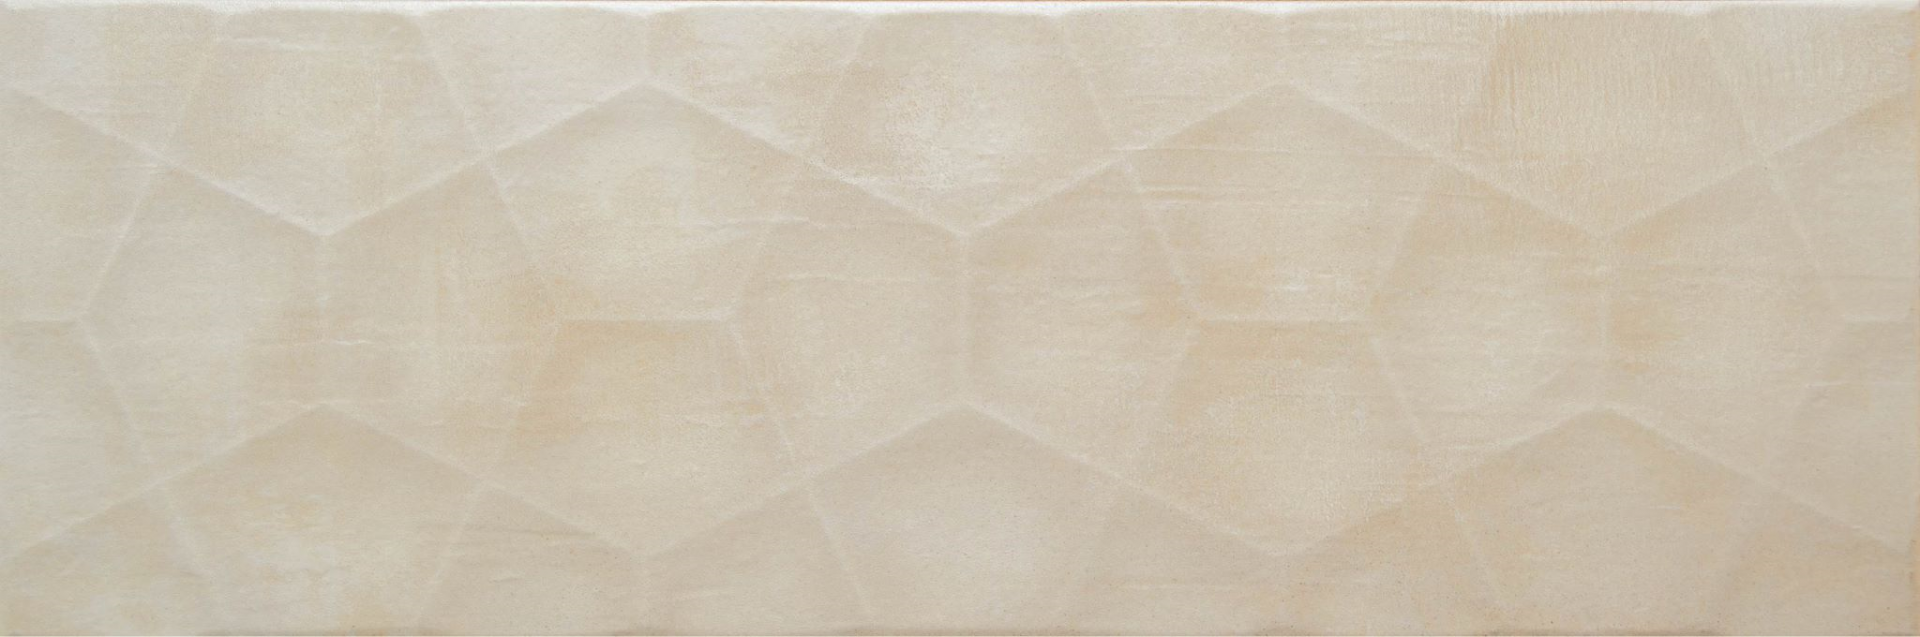 Керамическая плитка Casale Mino Ivory для стен 20x60